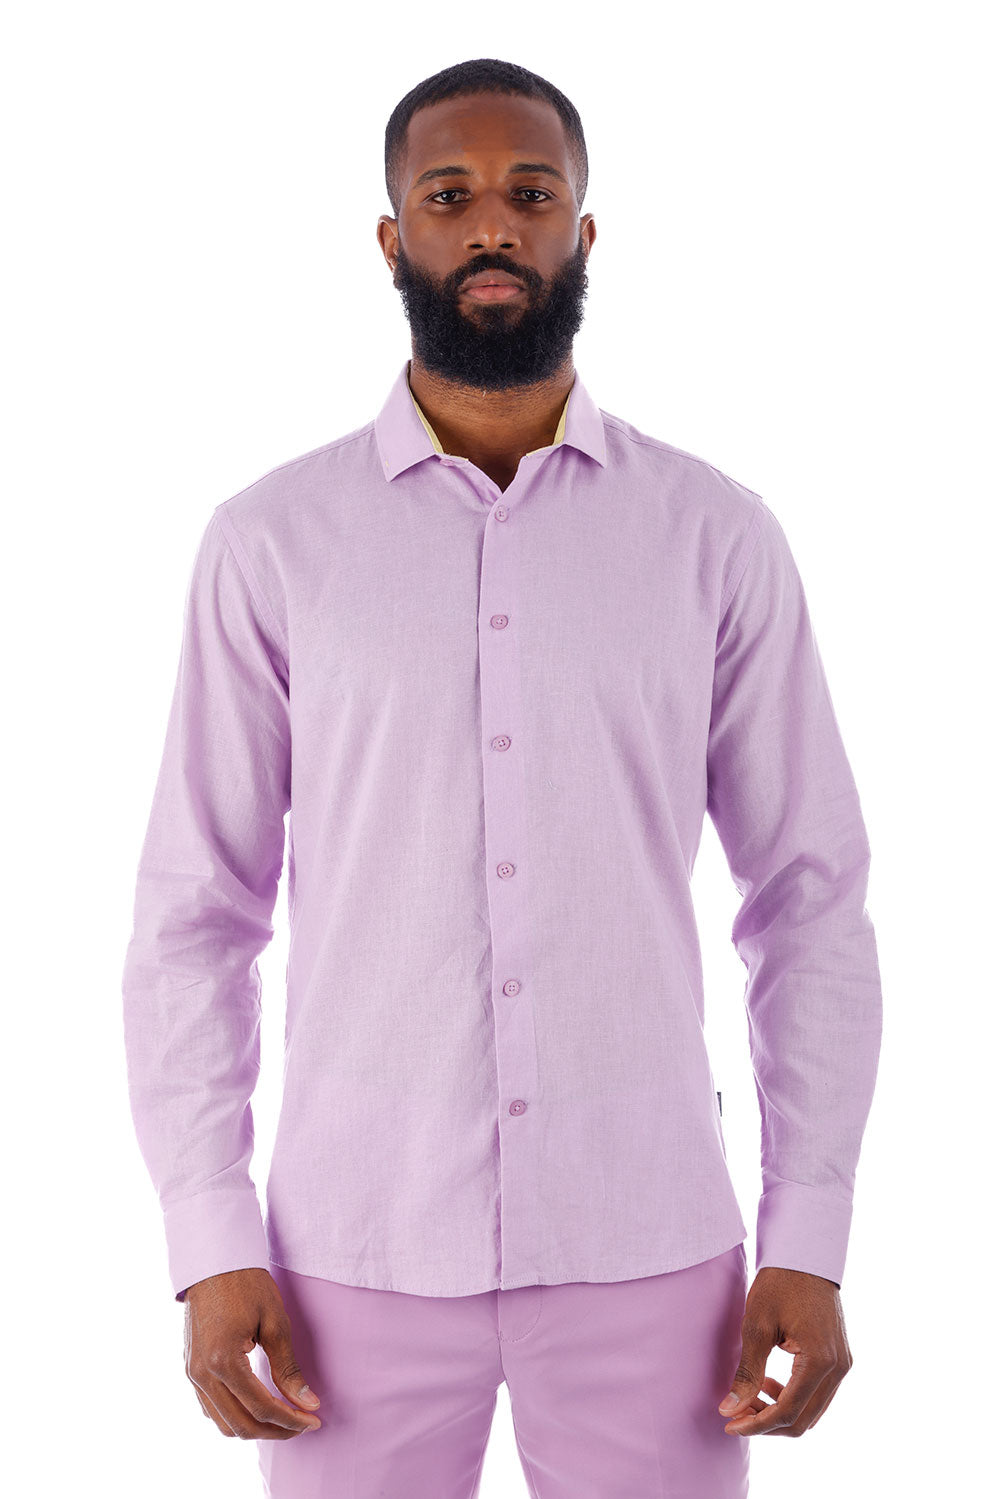 BARABAS Men's Linen Lightweight Button Down Long Sleeve Shirt 4B37 Lavender